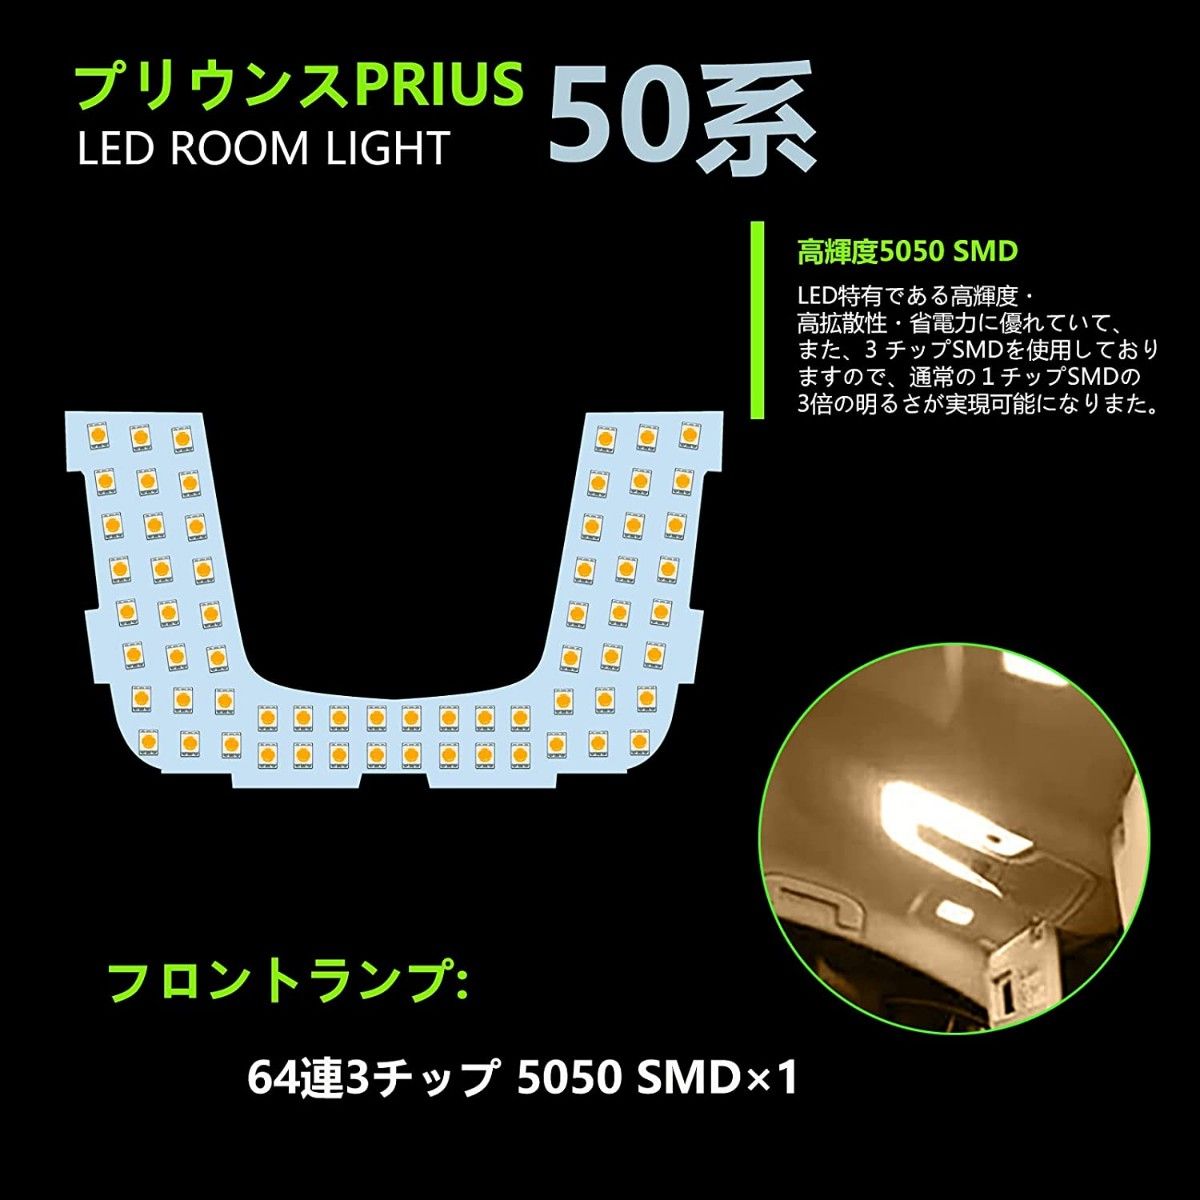 プリウス50系 改良版 LED ルームランプ 専用設計 電球色 車検対応